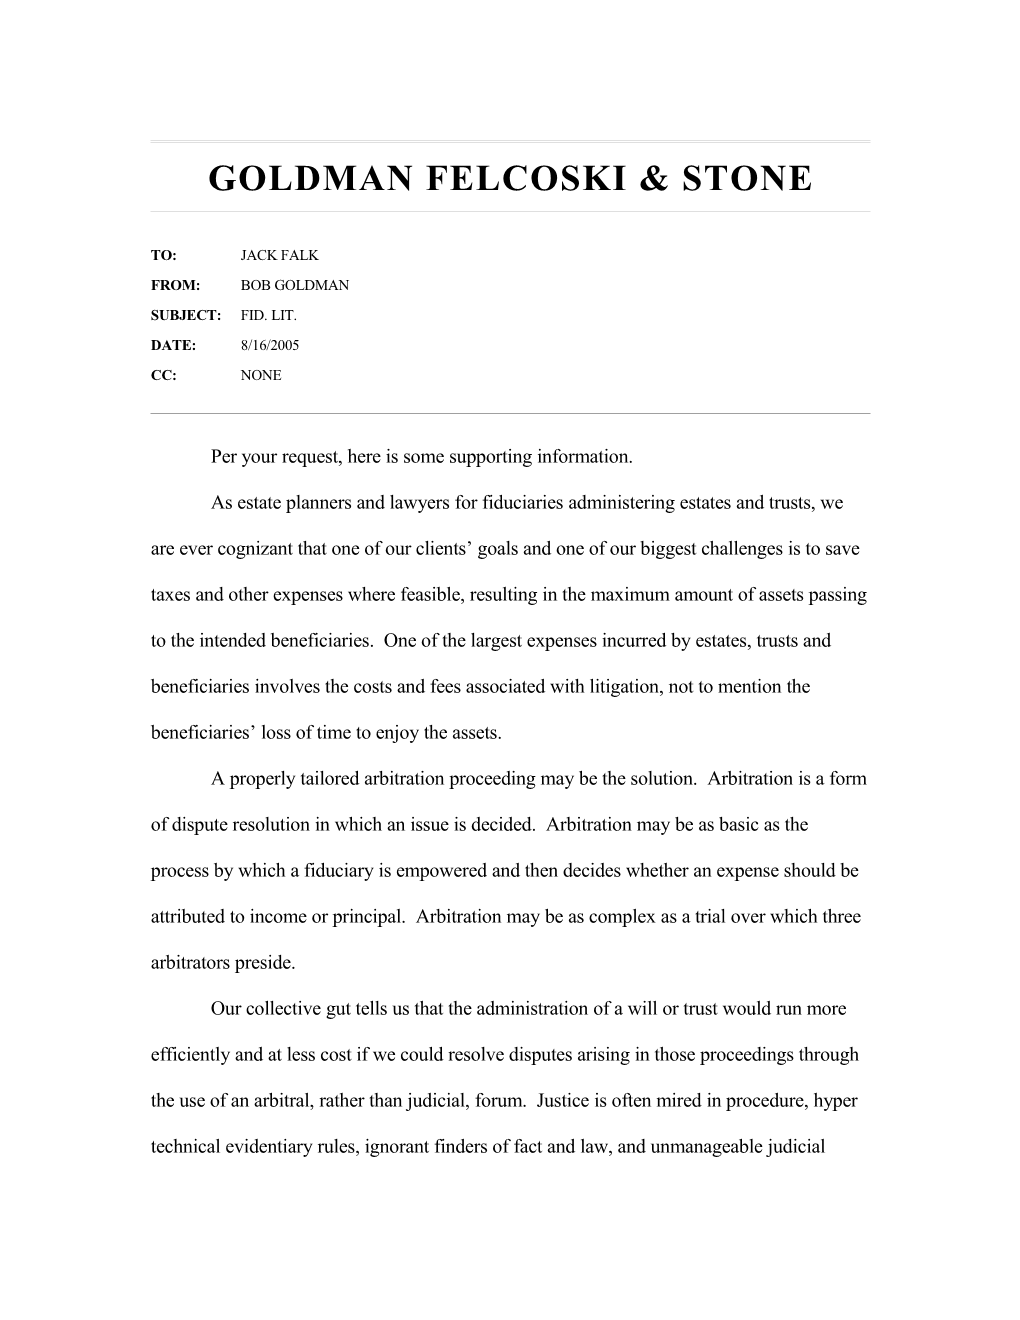 Goldman Felcoski & Stone